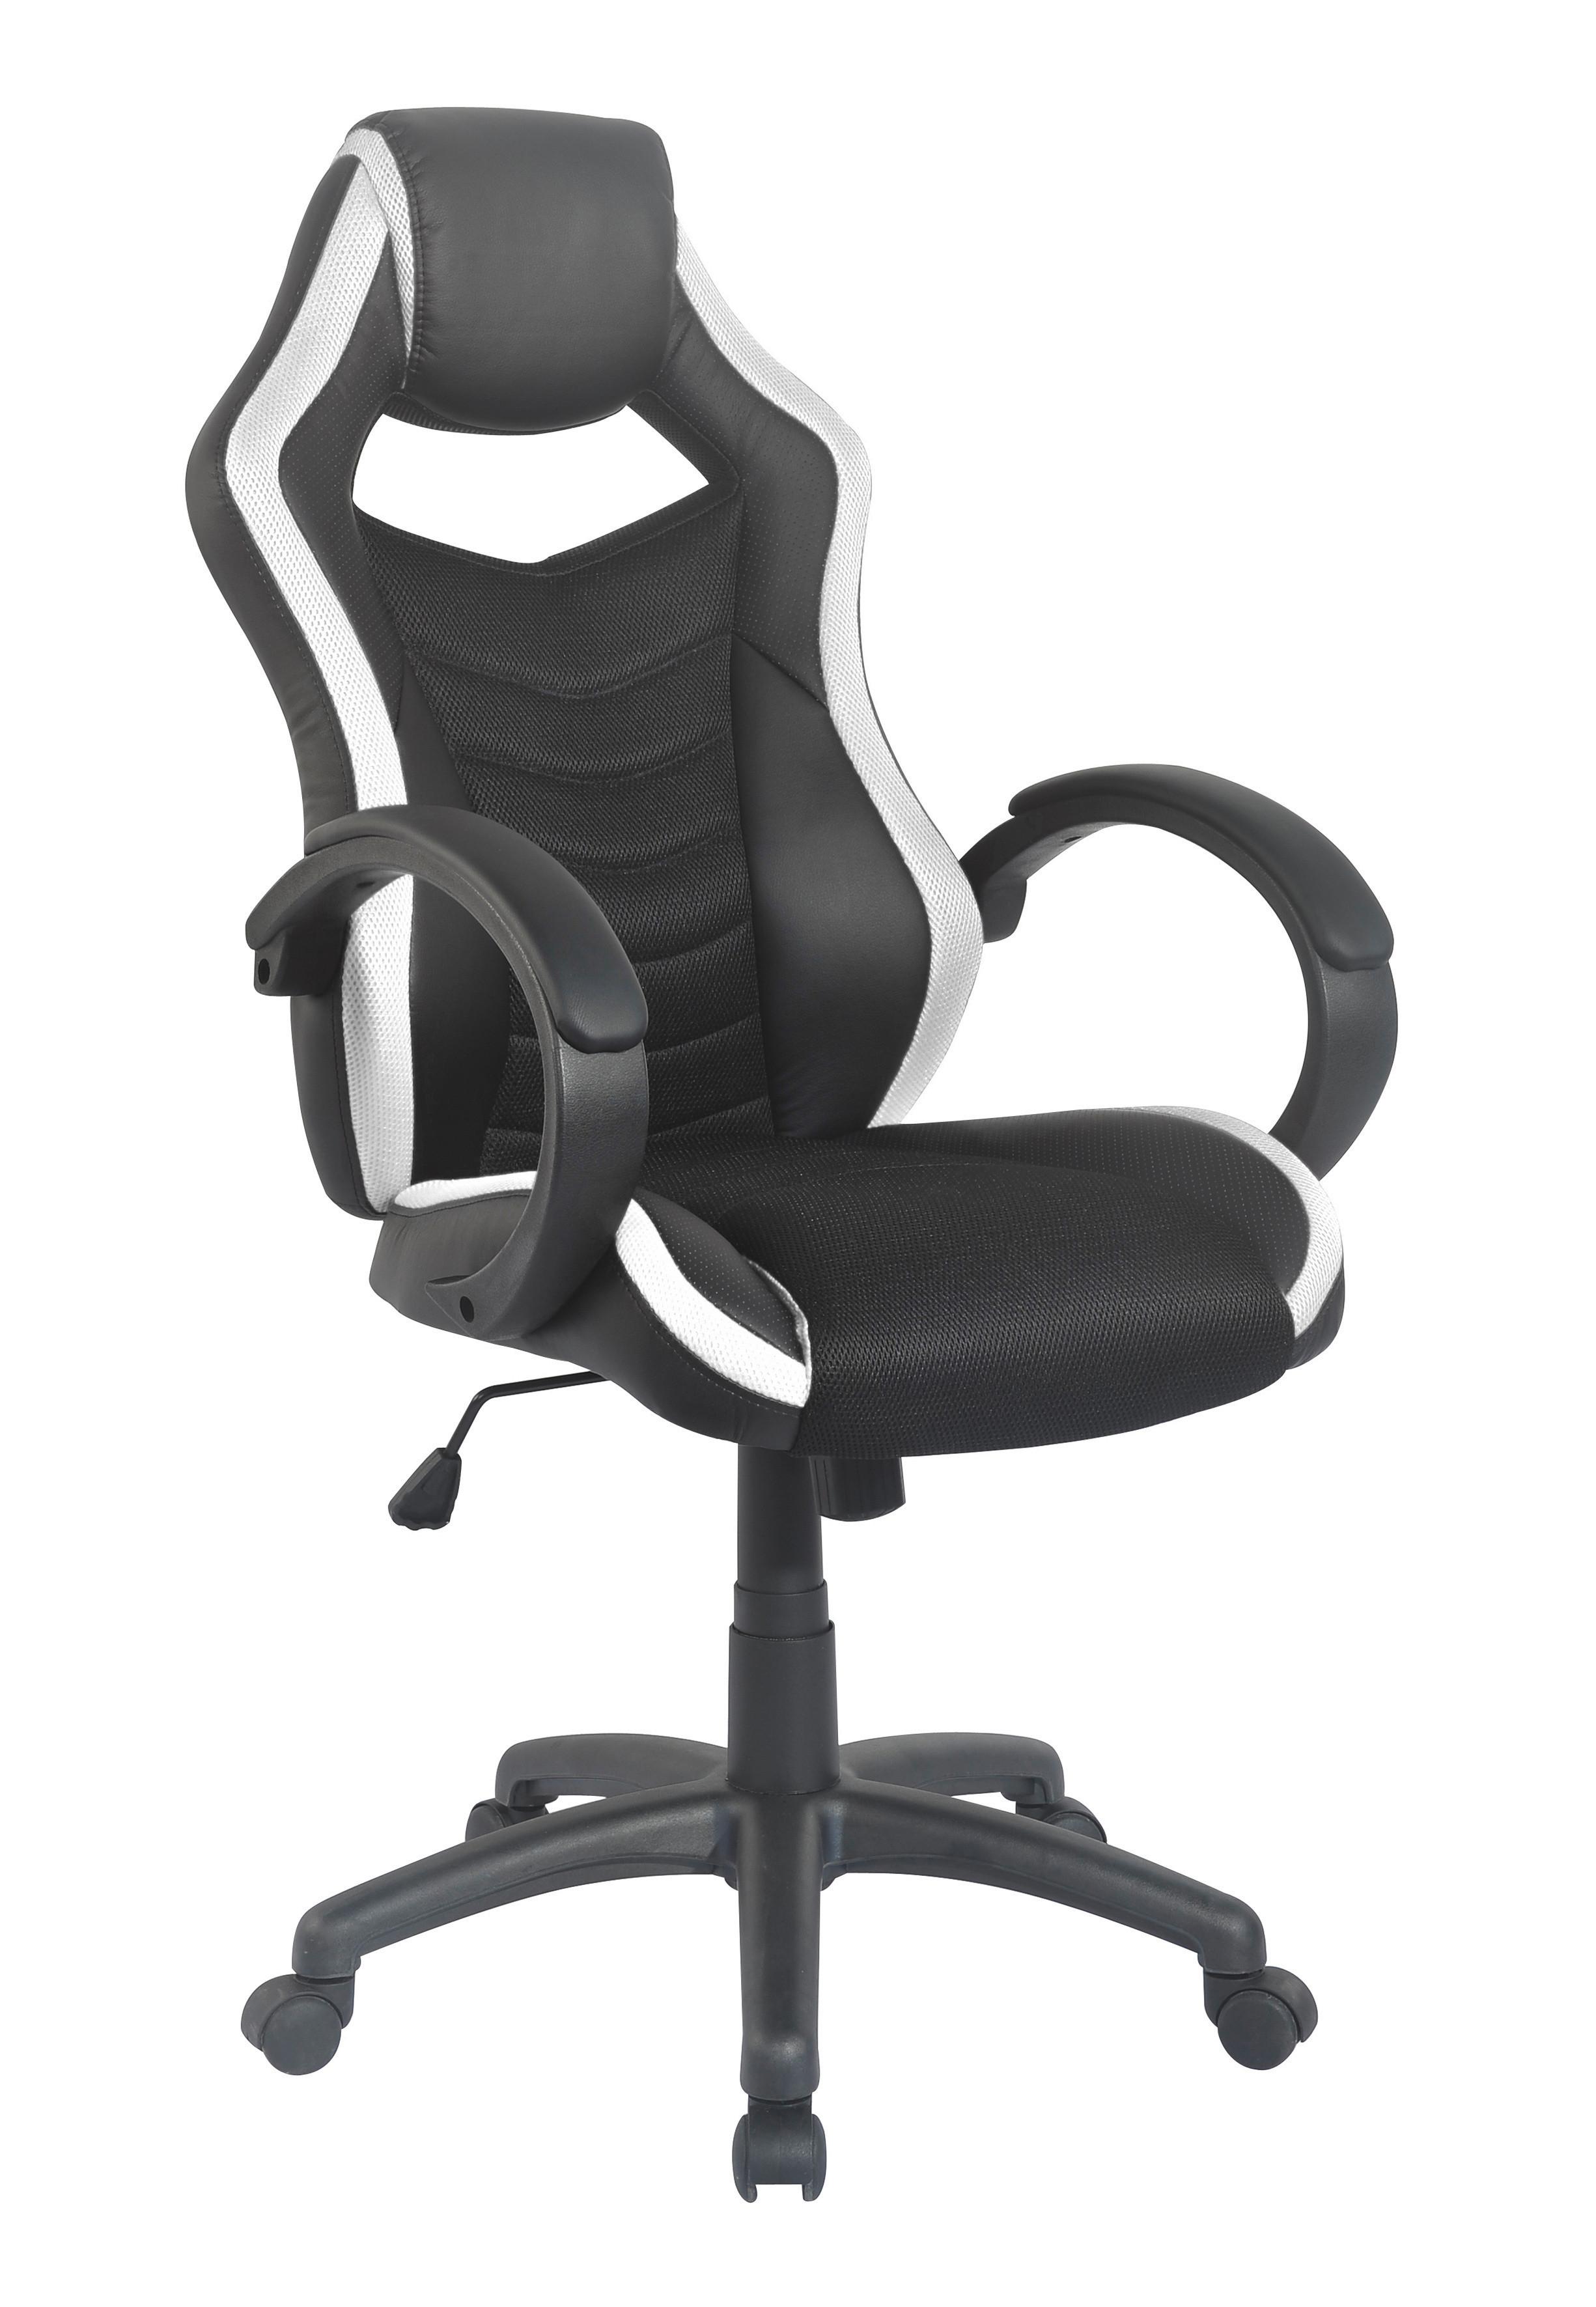 Gaming Stuhl Hornet Mit Armlehnen und Wippmechanik - Schwarz/Weiß, MODERN, Kunststoff/Textil (61/113/69cm) - MID.YOU